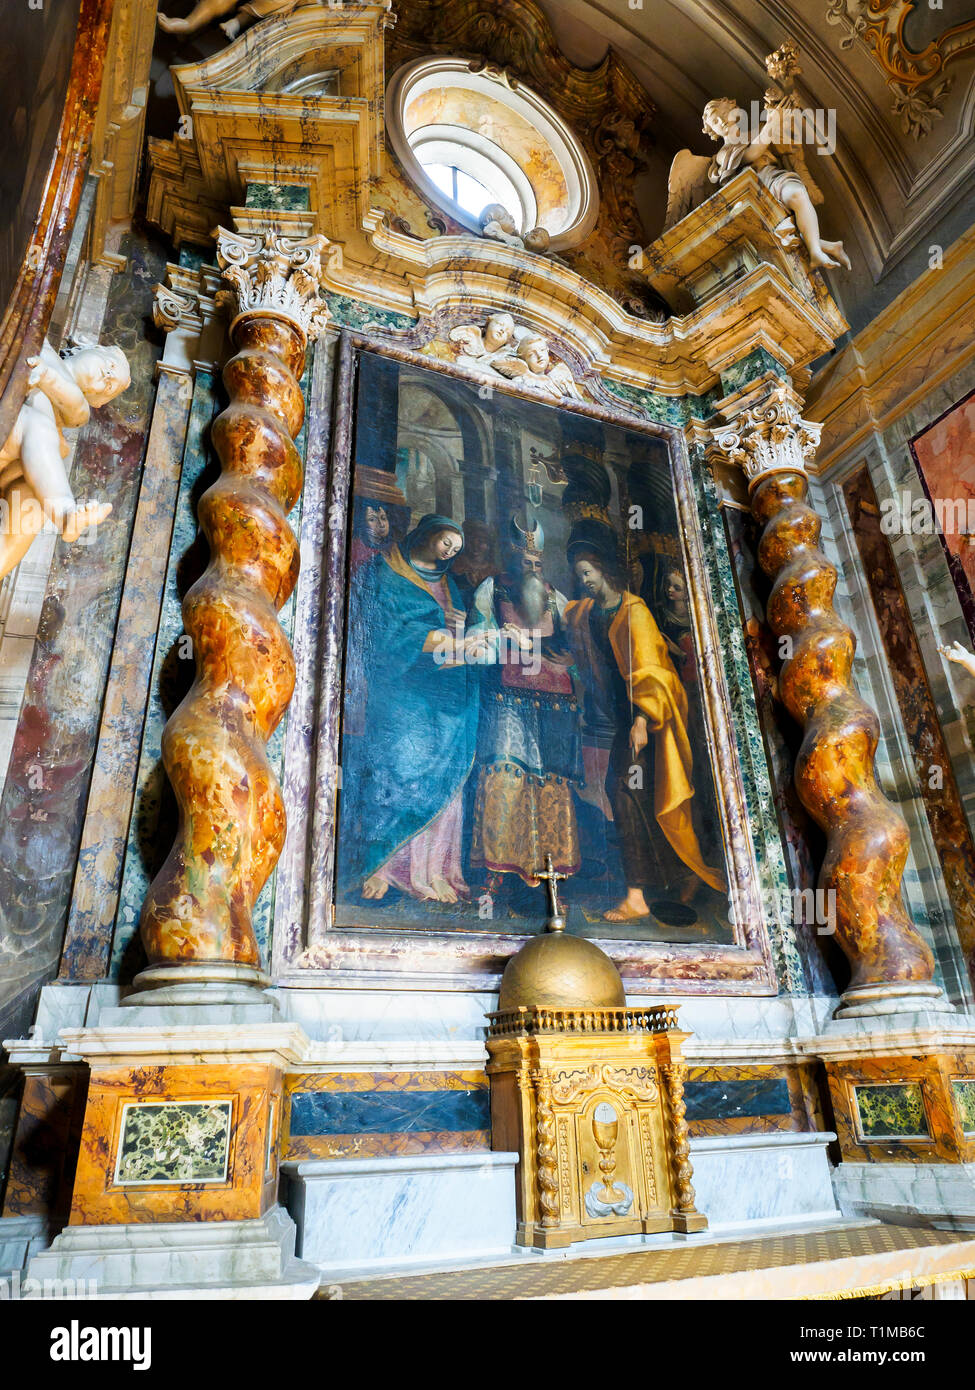 Lo Sposalizio della Vergine (le mariage de la Vierge) de Pietro Vannucci connu comme 'il Perugino' (1450 - 1523) - St Gervasius et Église St Protasius, Città della Pieve, Pérouse, Italie Banque D'Images